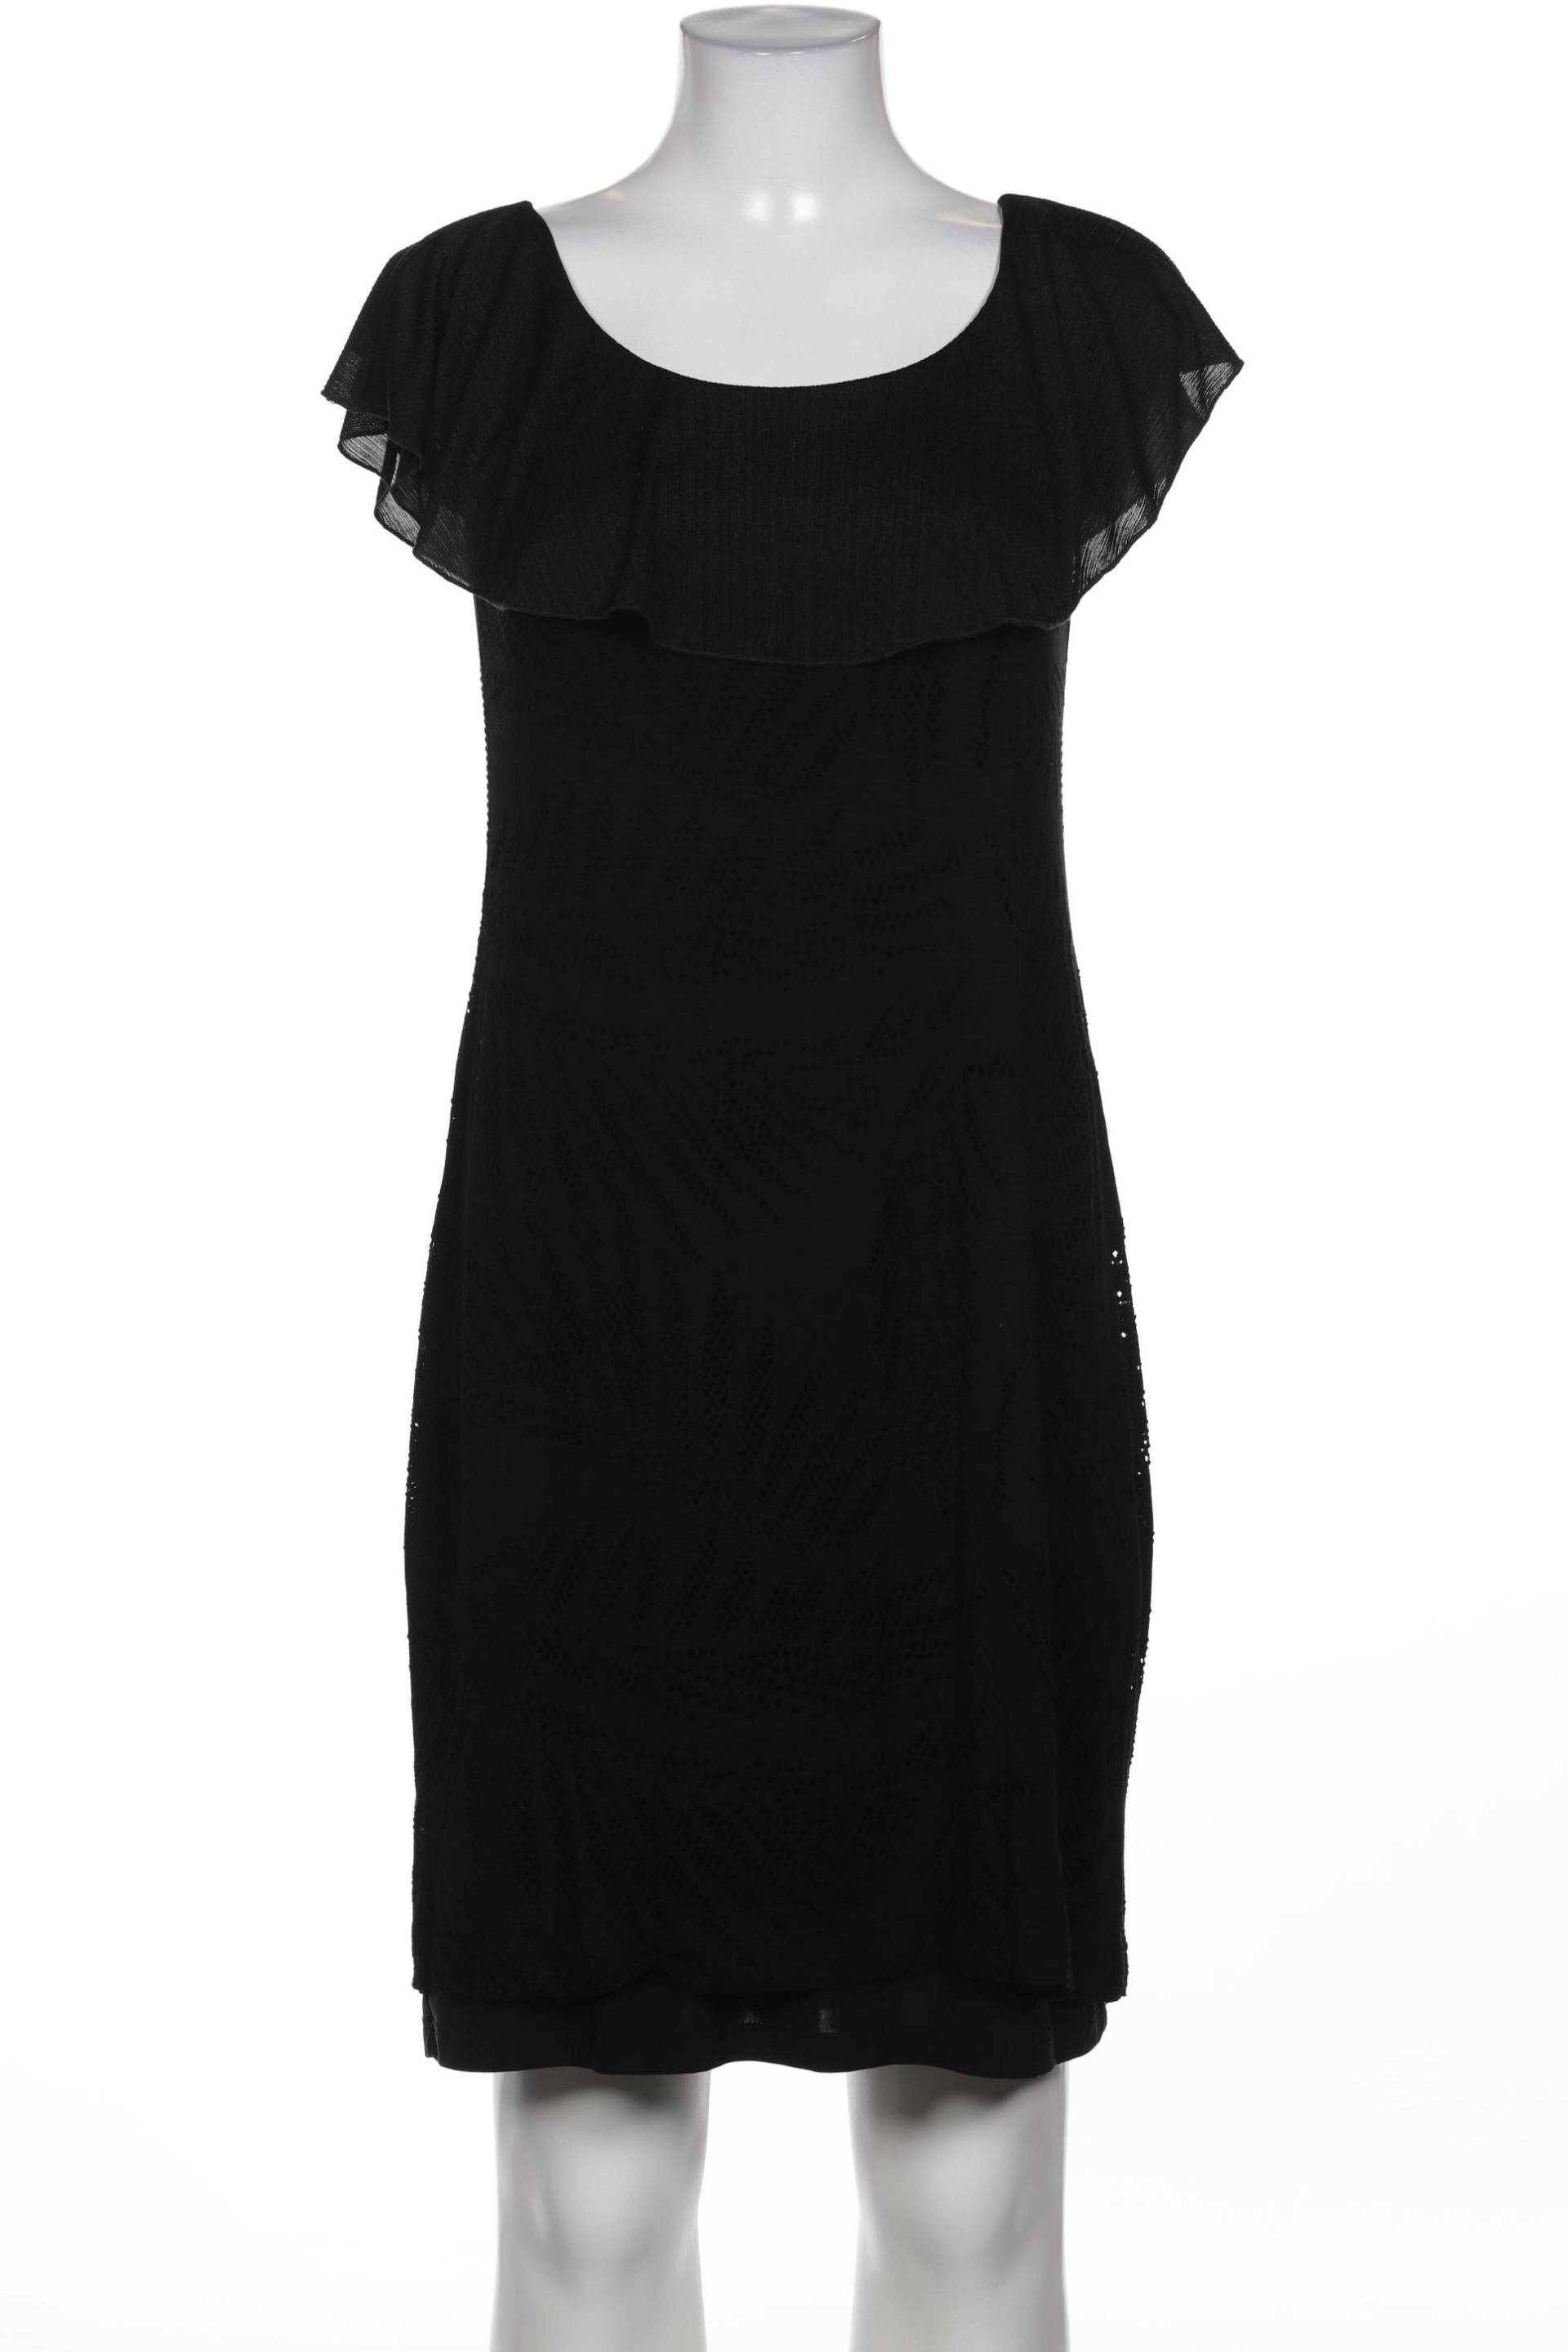 Ana Alcazar Damen Kleid, schwarz, Gr. 38 von Ana Alcazar